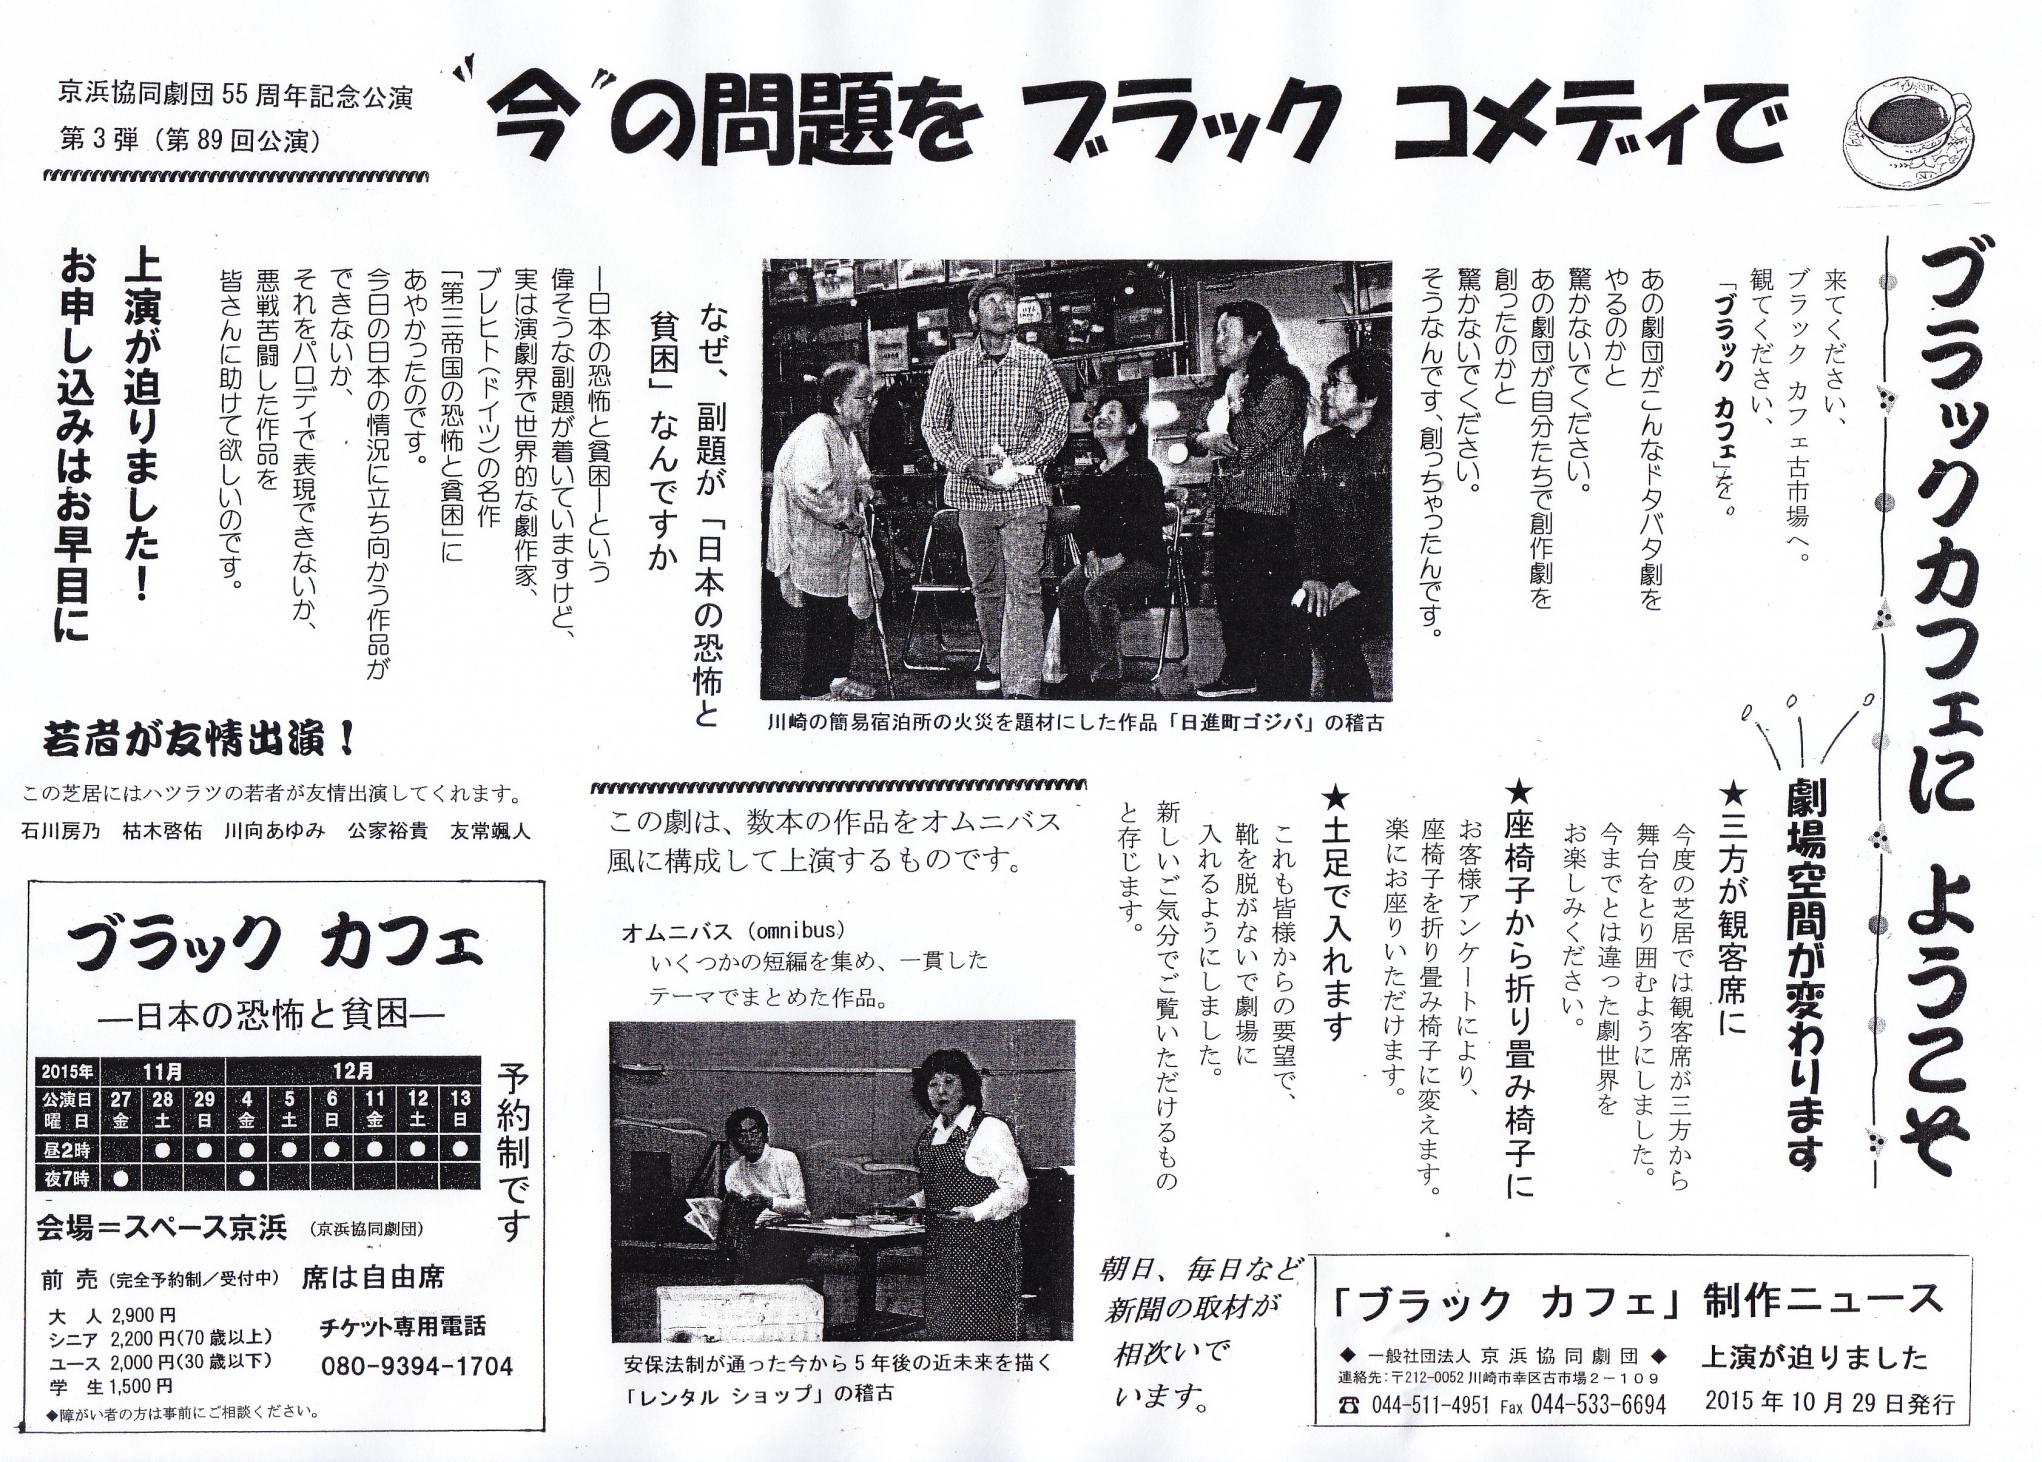 ブラックカフェにようこそ　今の話題をブラックコメディで　京浜協同劇団55周年記念公演　第3弾　第89回公演